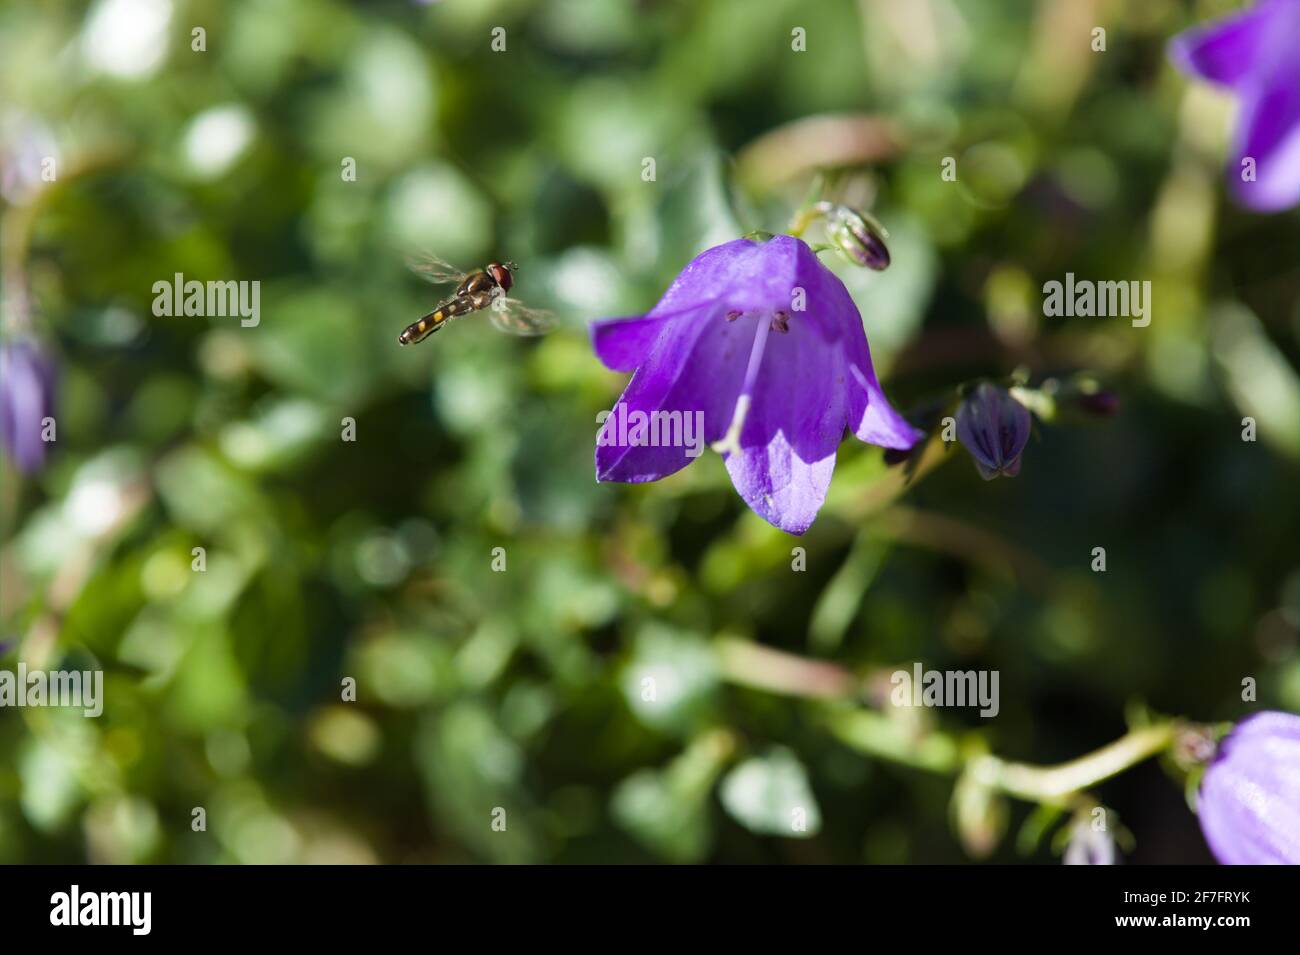 Natürliche Welt Schönheit / erstaunliche Insekten - Blick auf eine Schwebfliege im Flug / Syrphid-Familie nähert sich violett-blauen Zwergbellblumen / Fairy Thimbles / Stockfoto